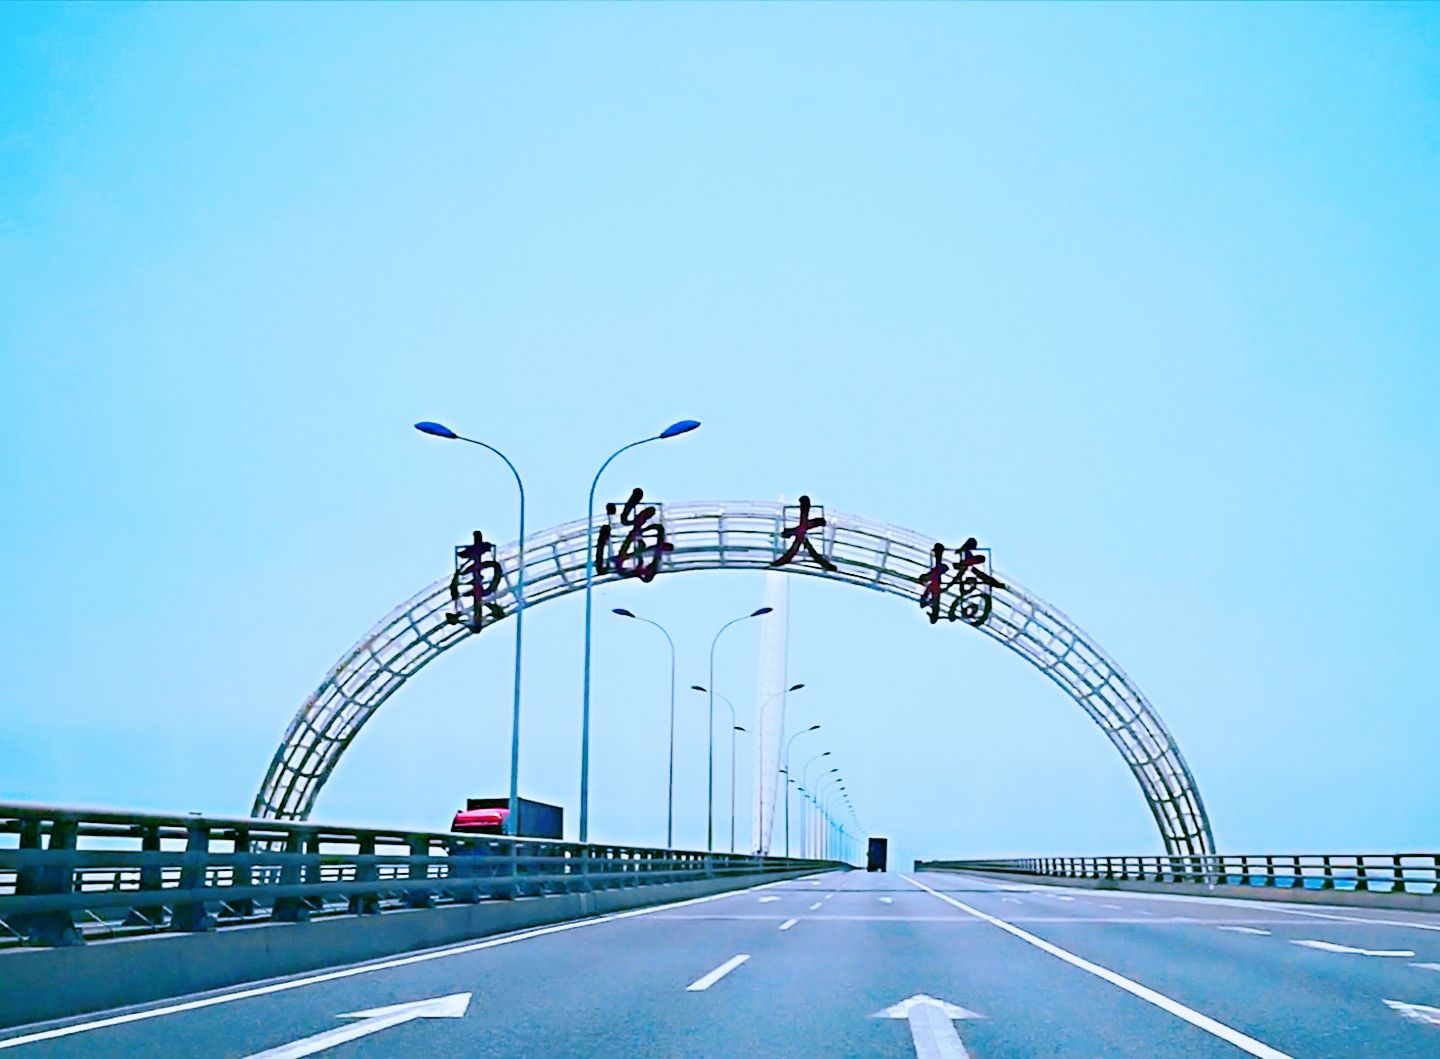 上海东海大桥攻略,上海东海大桥门票/游玩攻略/地址/图片/门票价格【携程攻略】